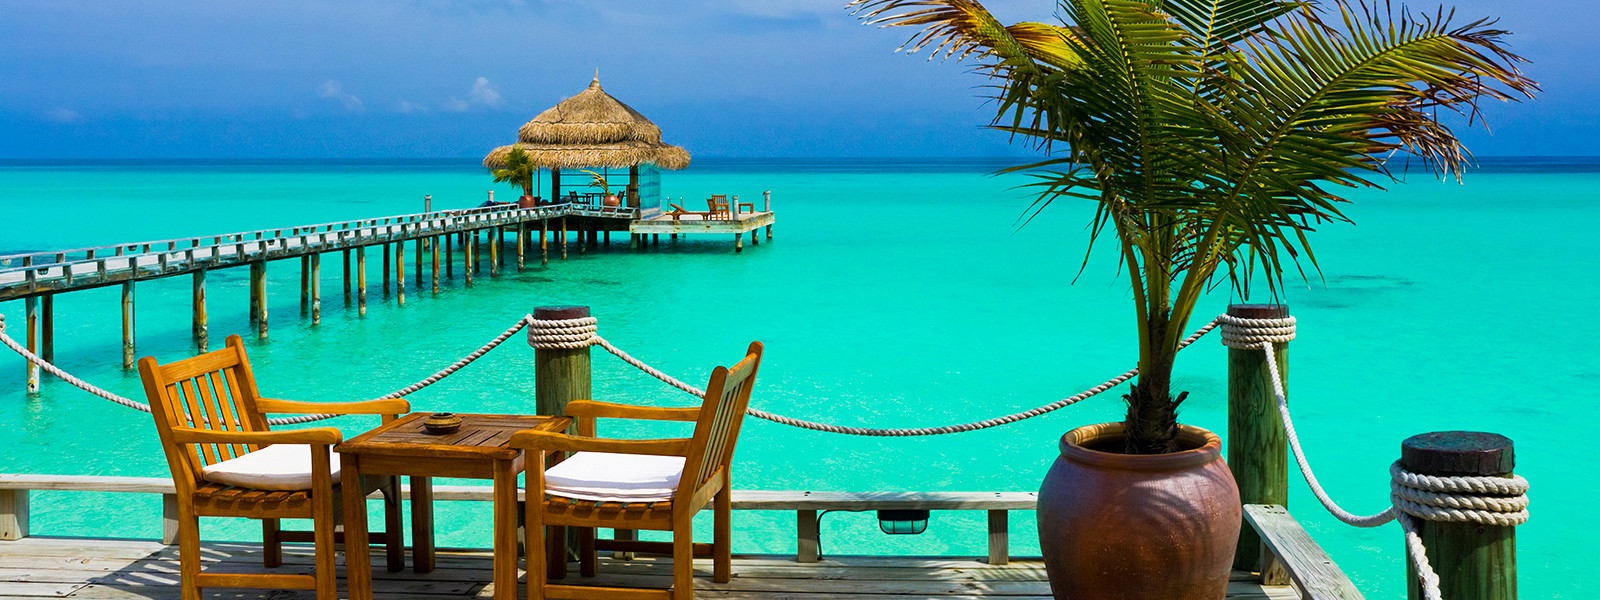 Журнал/6 самых романтичных отелей на Мальдивах